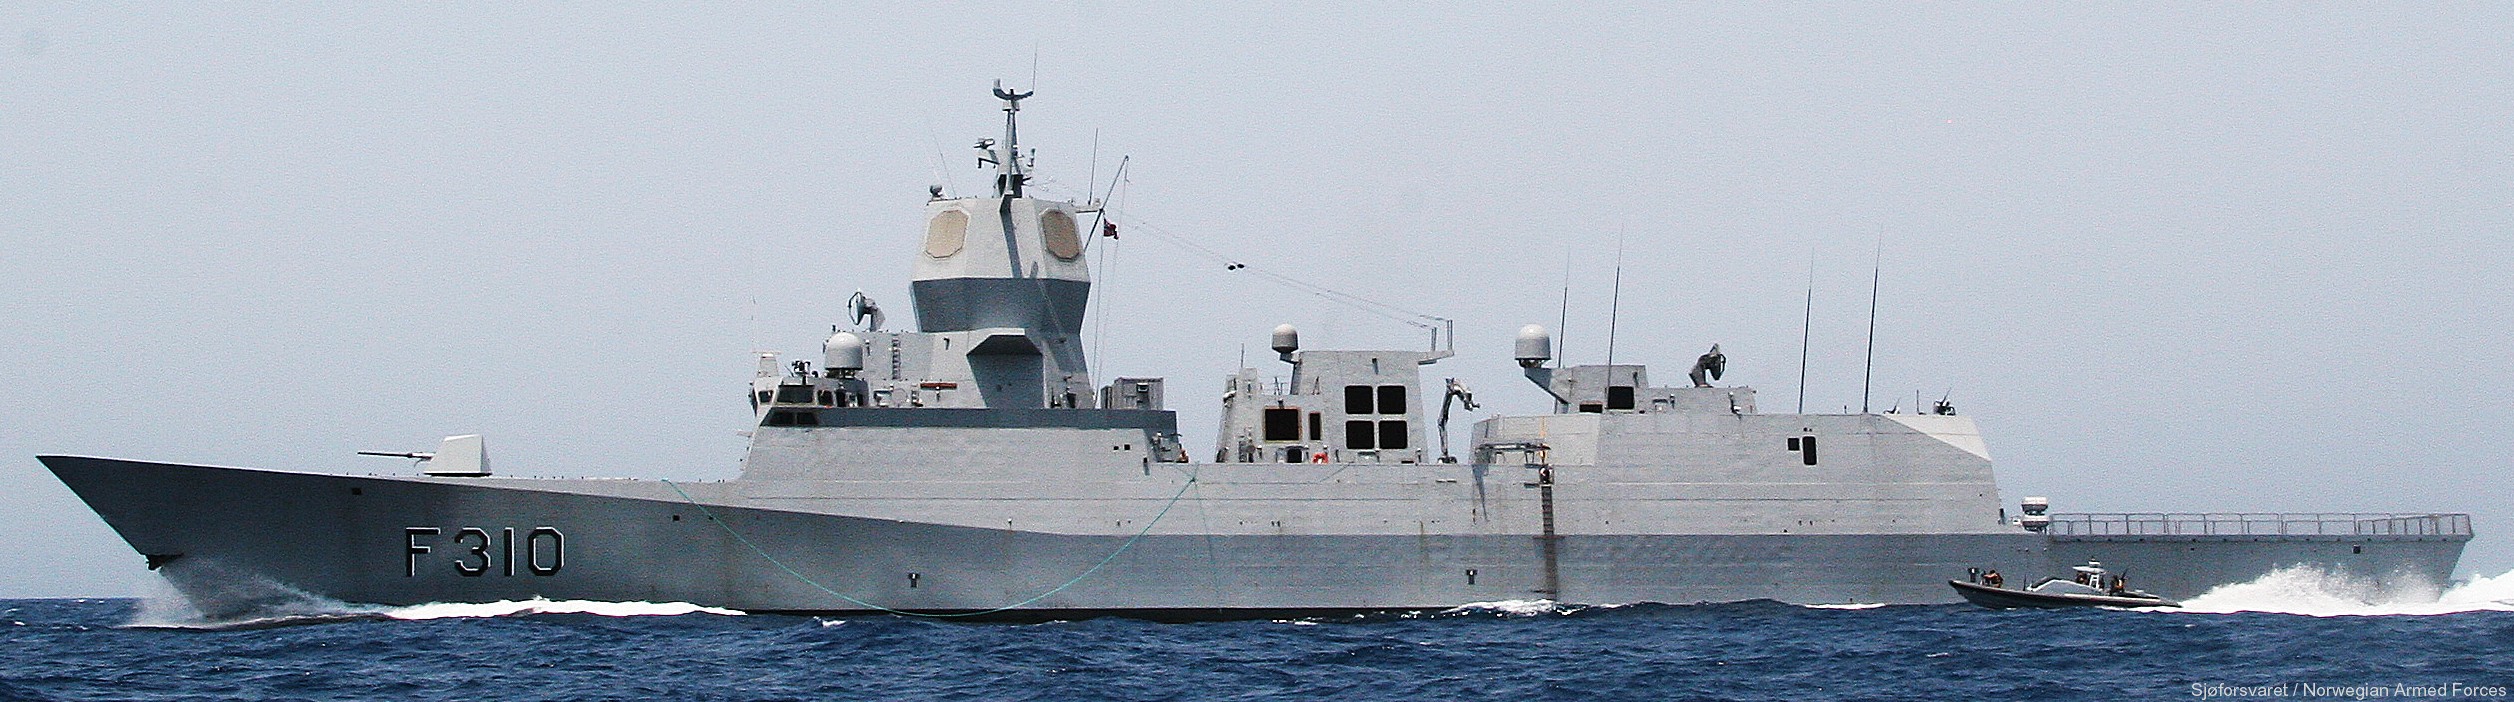 f-310 fridtjof nansen hnoms knm frigate royal norwegian navy sjoforsvaret 62